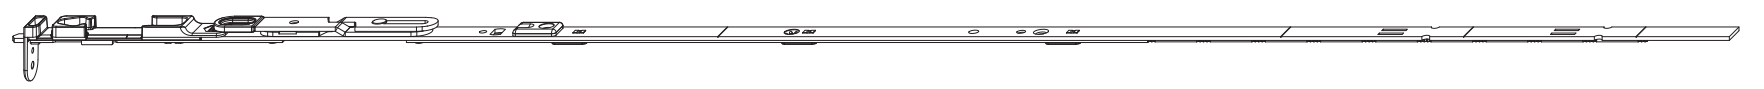 MAICO -  Catenaccio MULTI-MATIC asta a leva altezza maniglia fissa euronut - gr / dim. 2450 - lbb/hbb 2201-2450 - alt. man. 1050 - mano DX